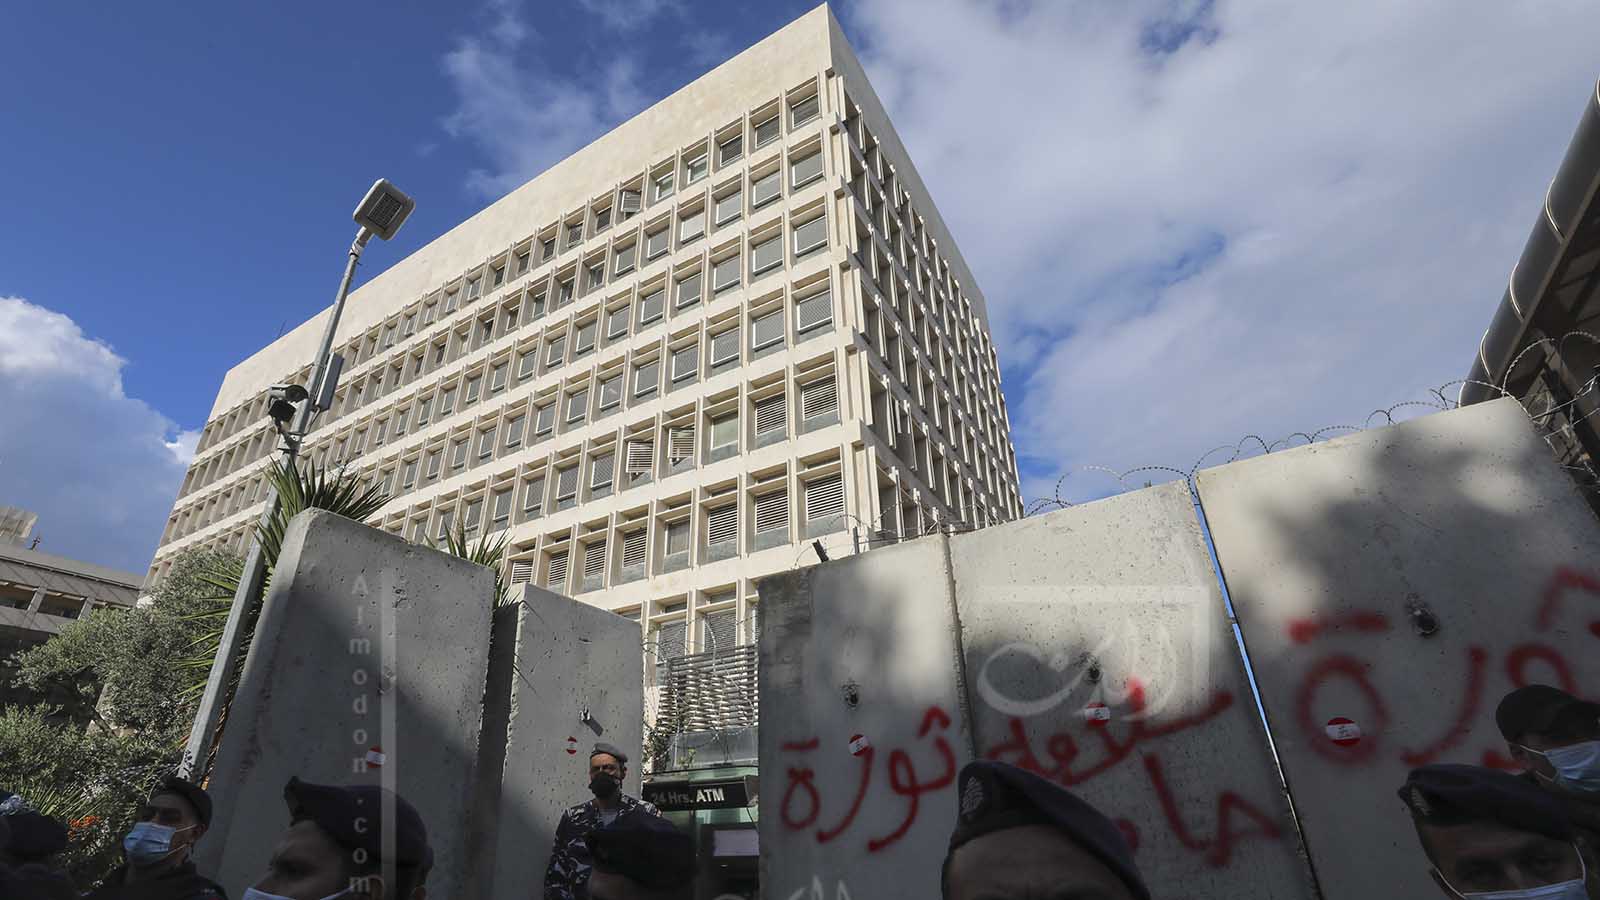 المصارف قيد التصفية ومصرف لبنان يهلك بالخسائر